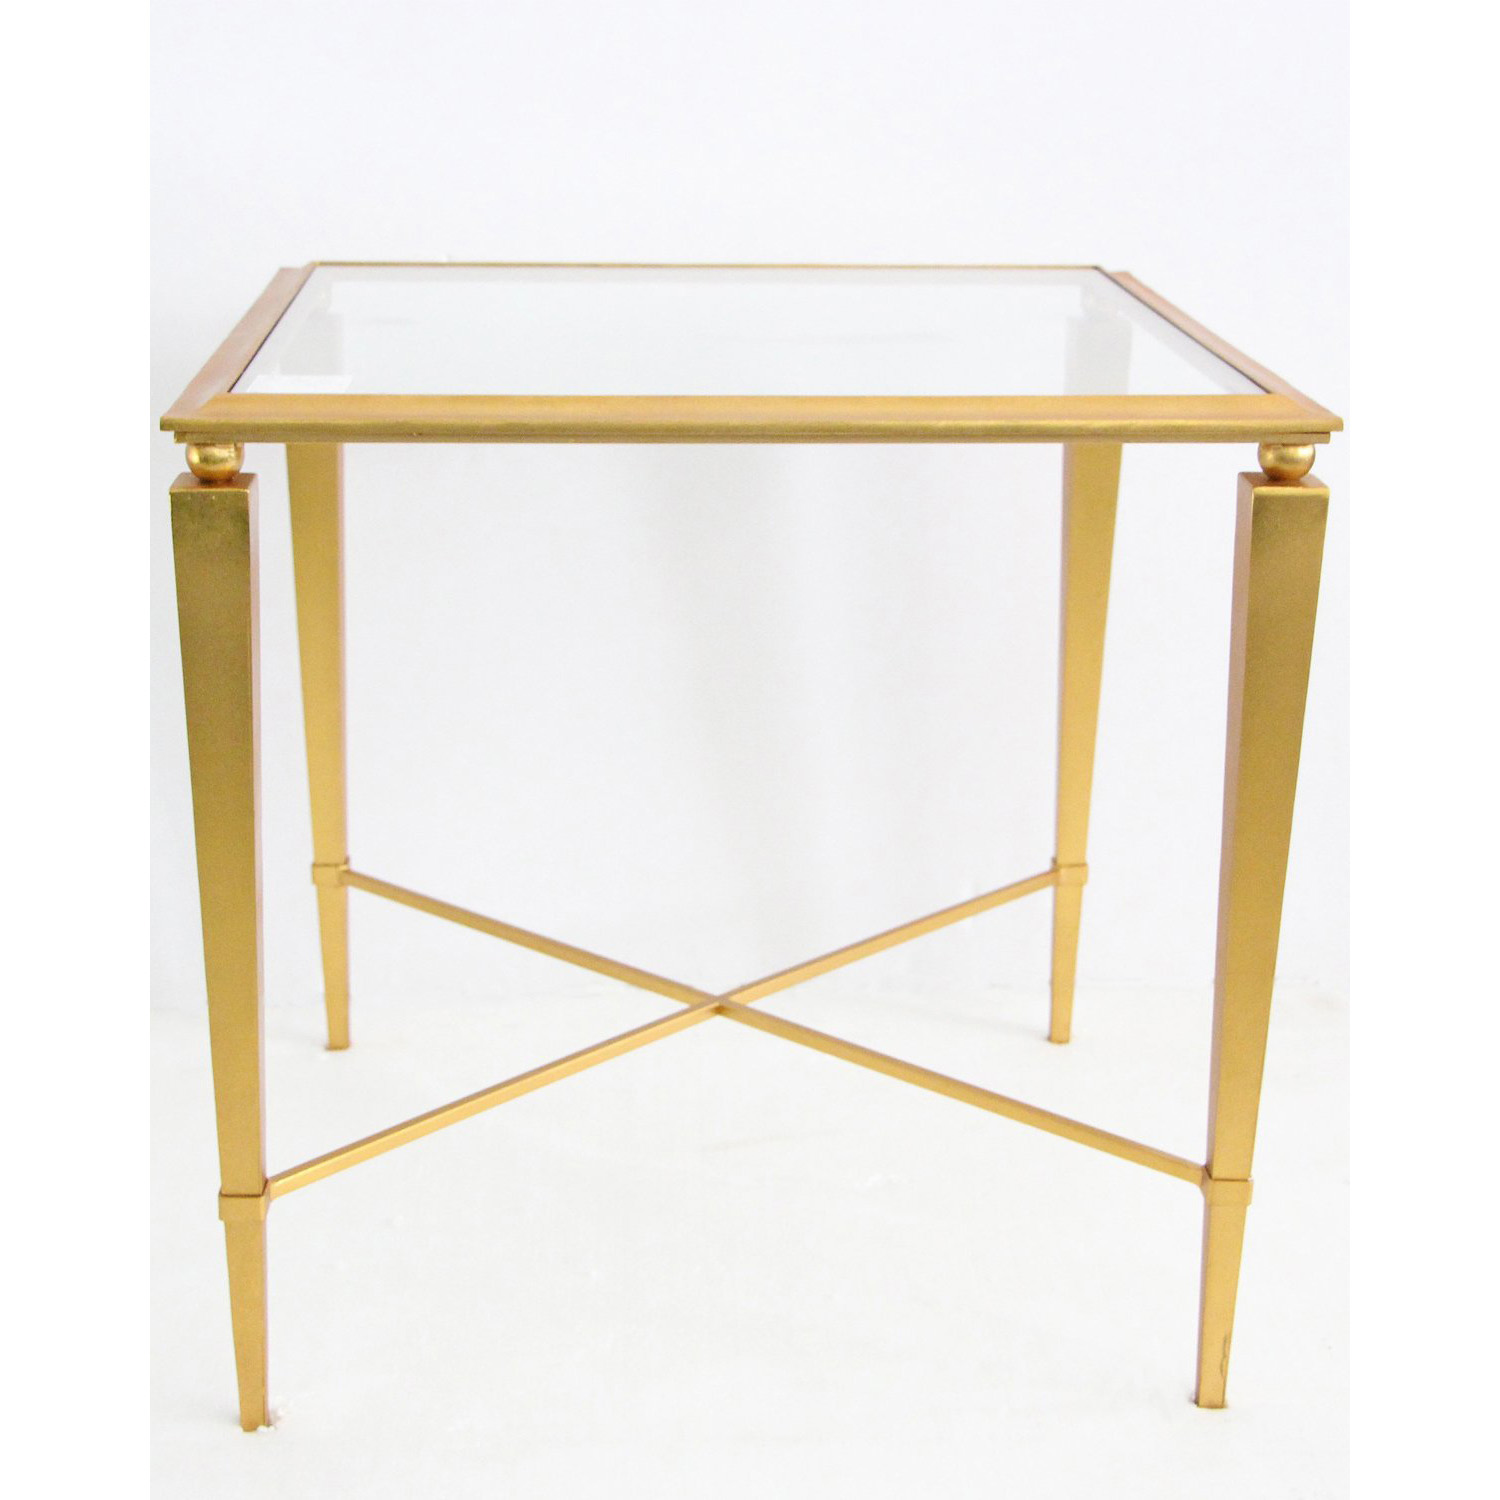 Стол журнальный приставной Louvrehome "Мауро" gold, размер 60х60х61 (LHST3053G)LHST3053G